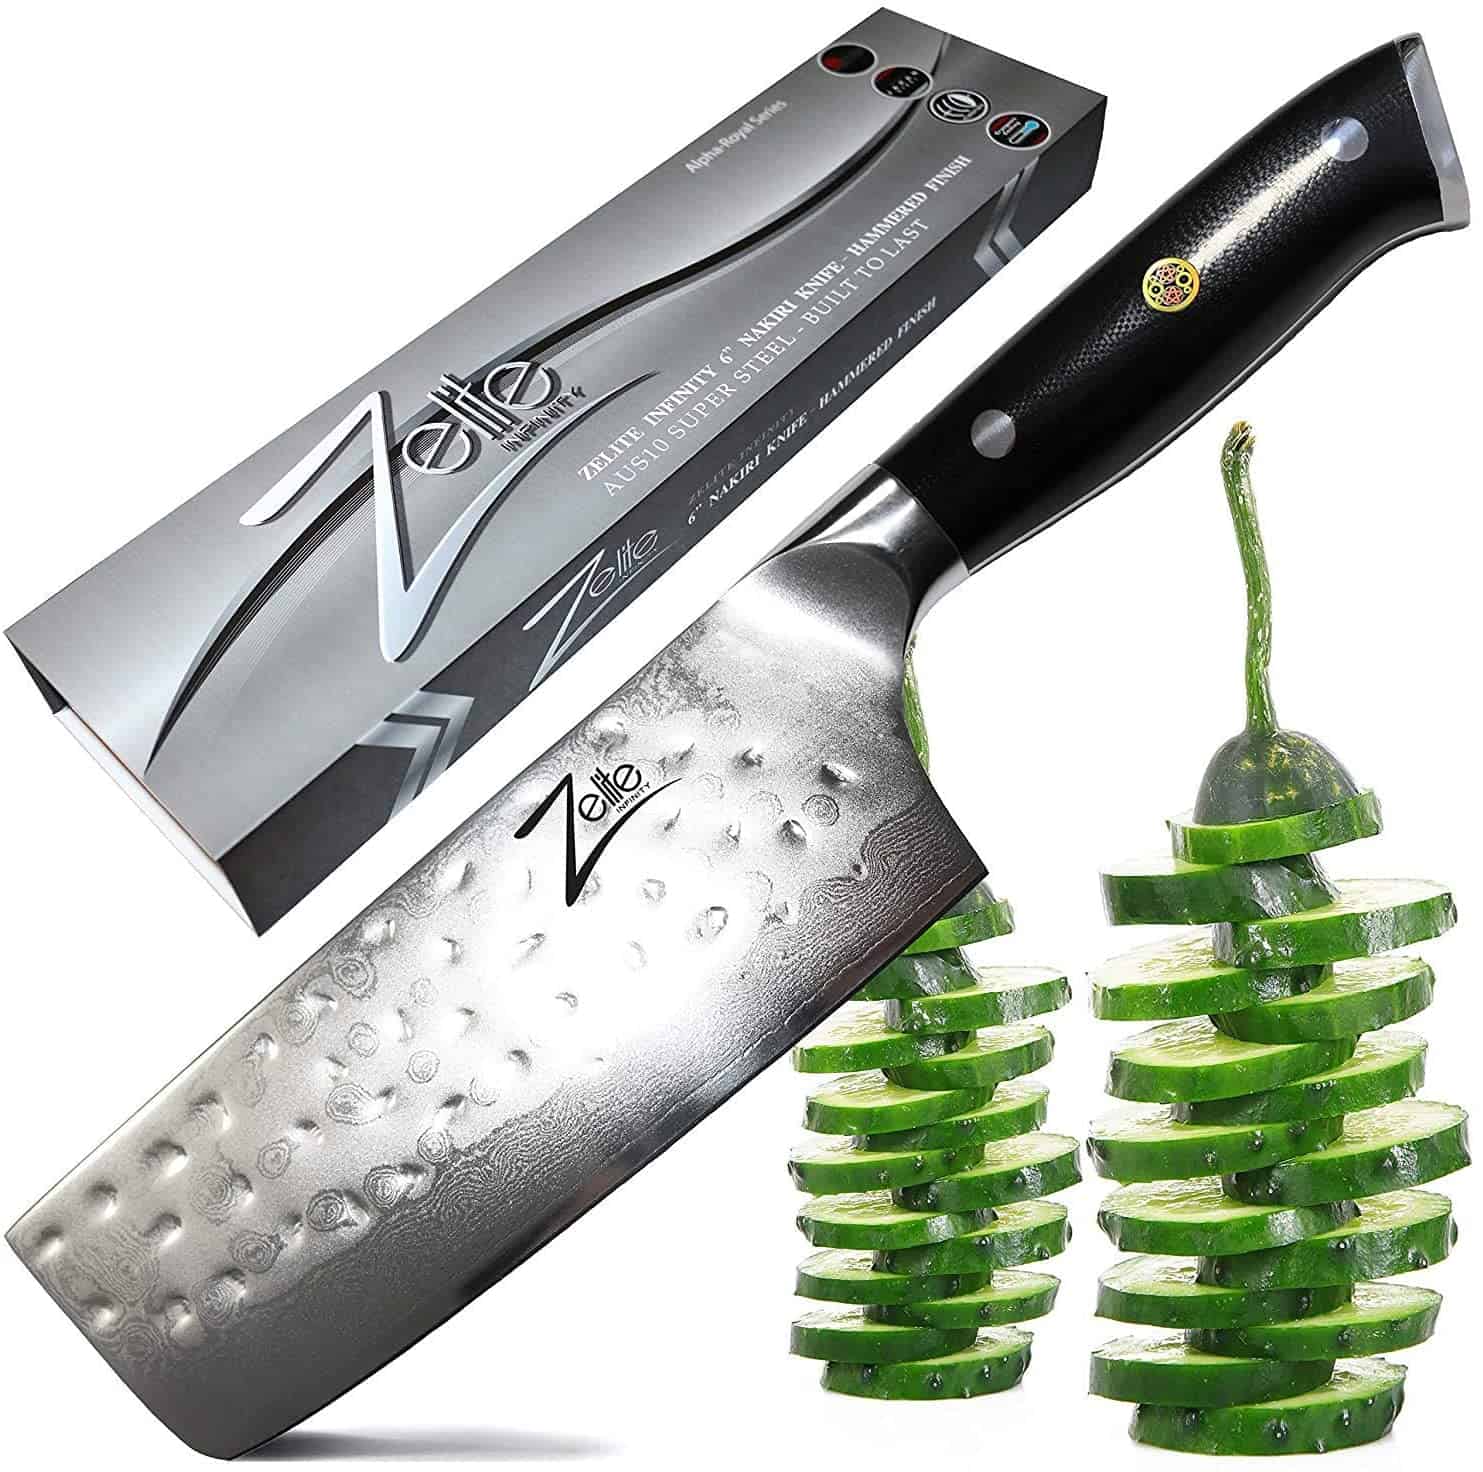 Bästa AUS 10 japansk stålkniv för grönsaker- Zelite Infinity Nakiri Chef Knife 6 Inch